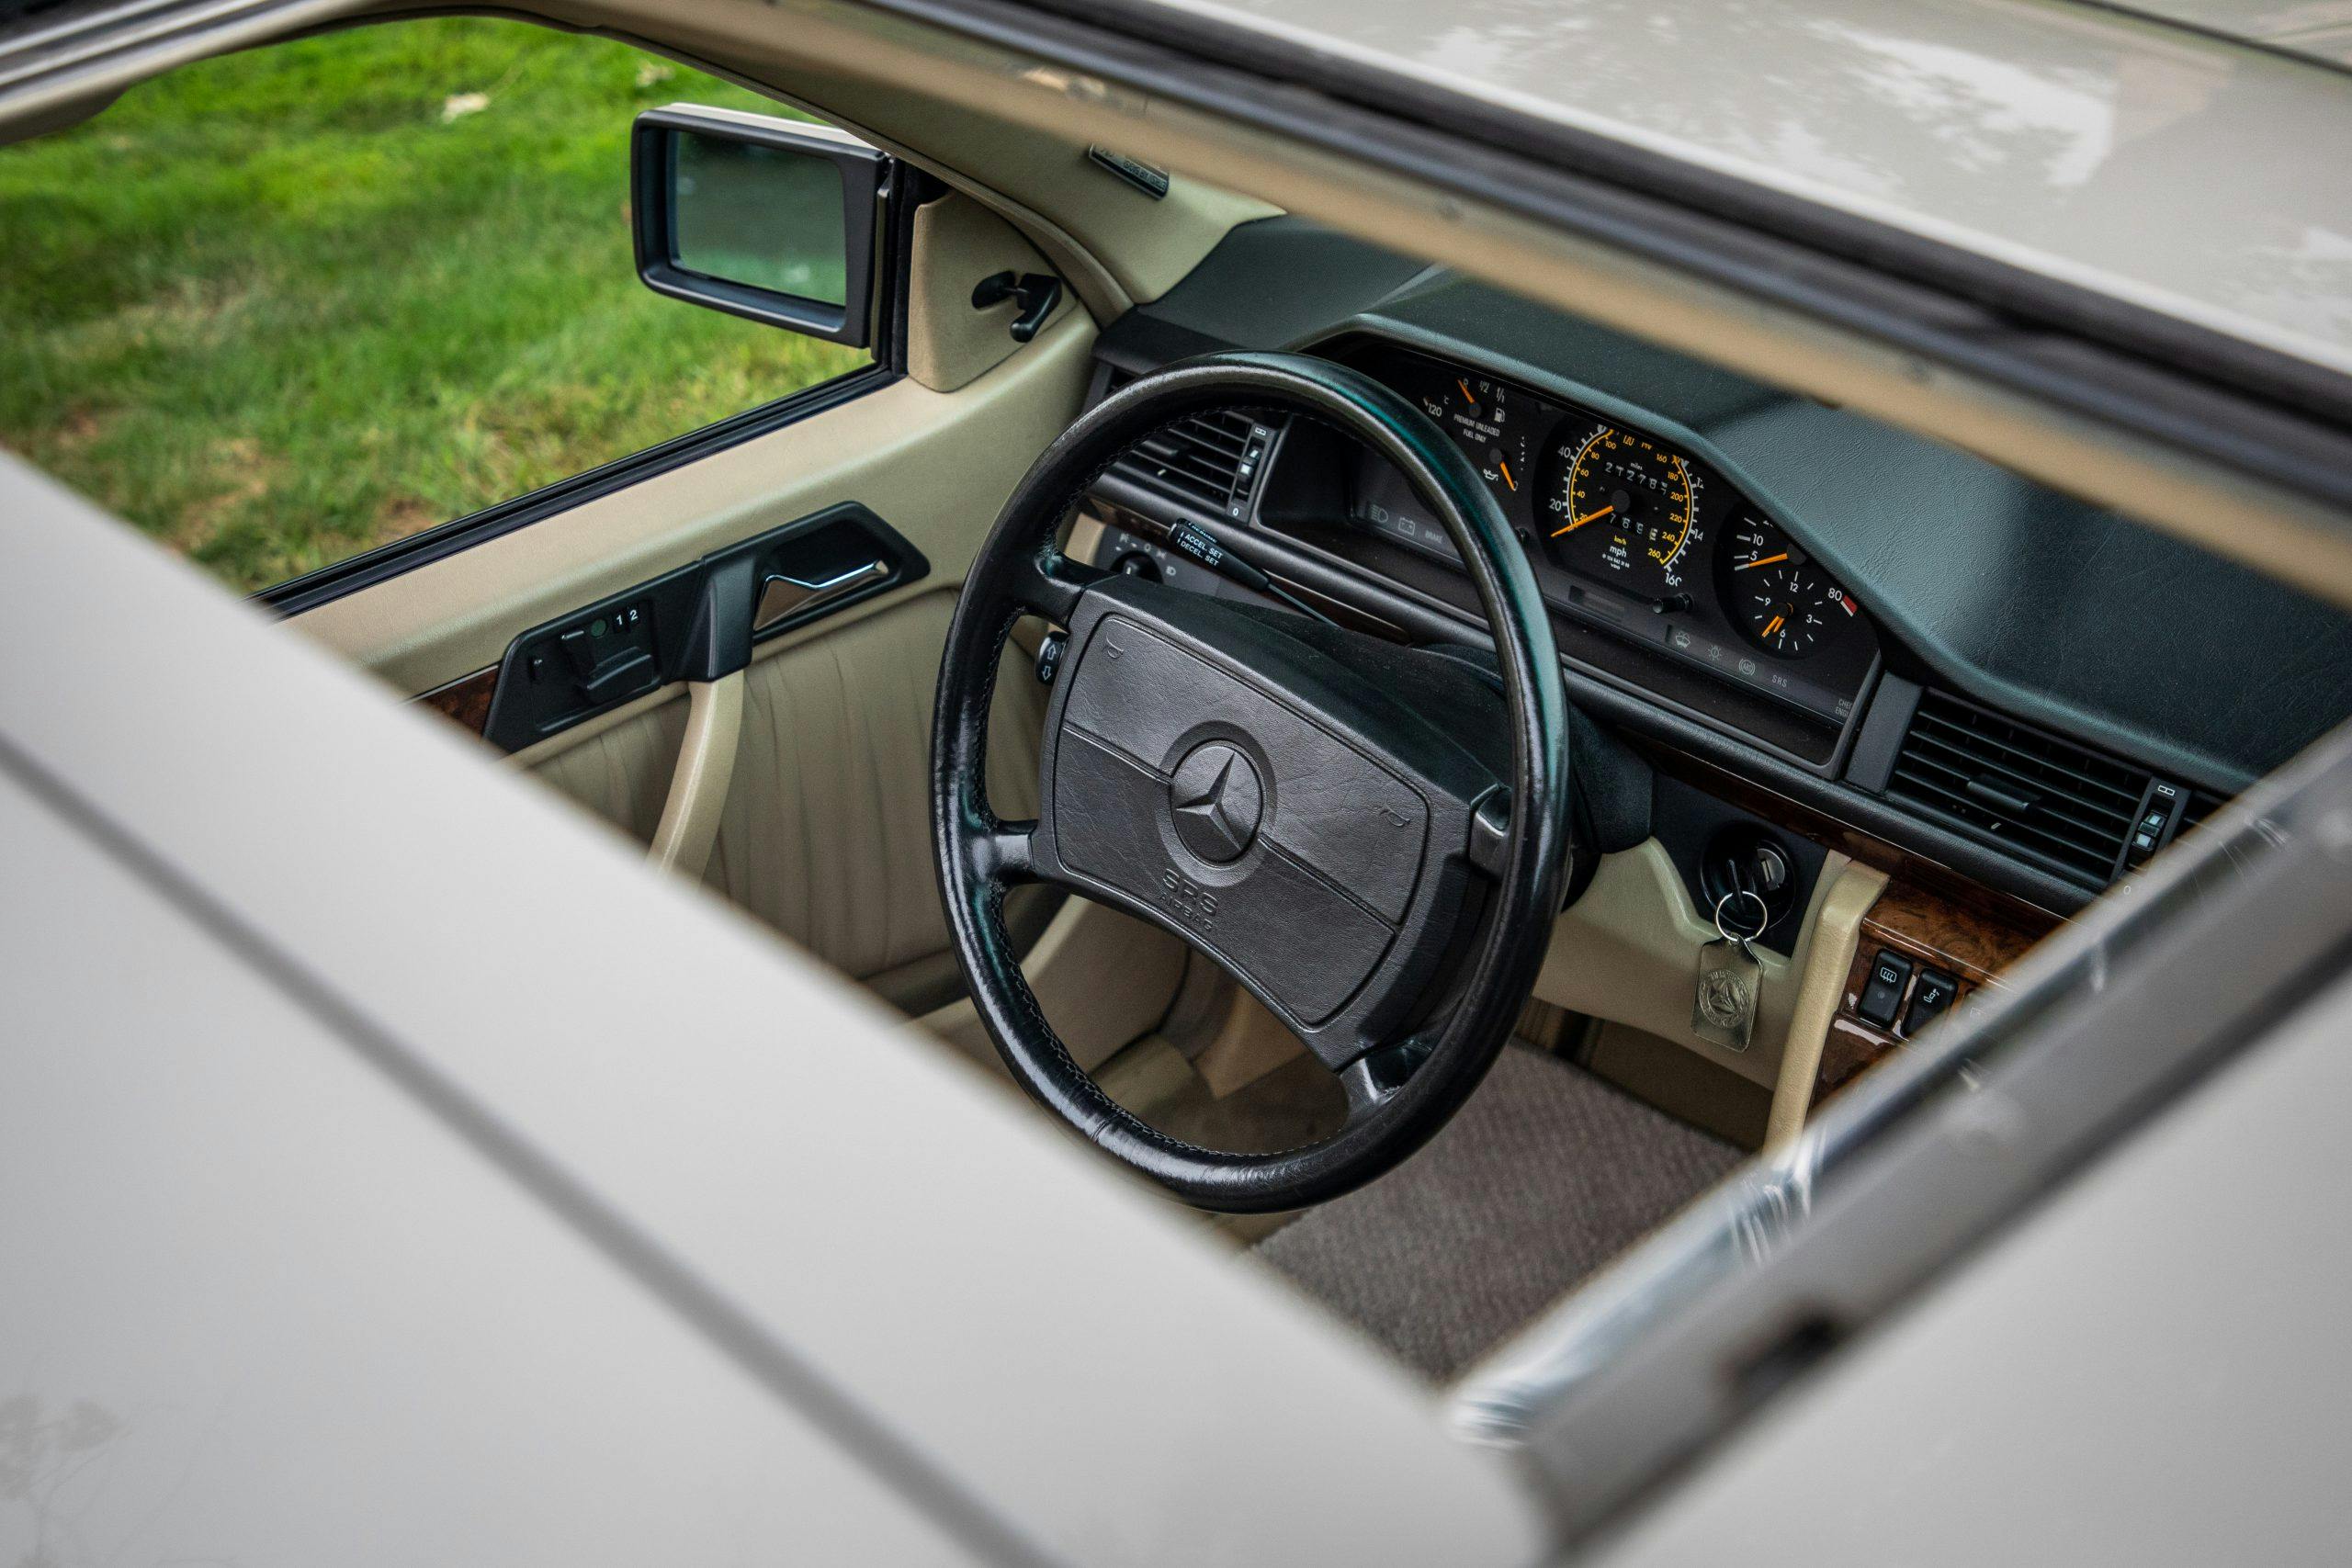 1990 Mercedes-Benz 300CE-24 interior moonroof egress